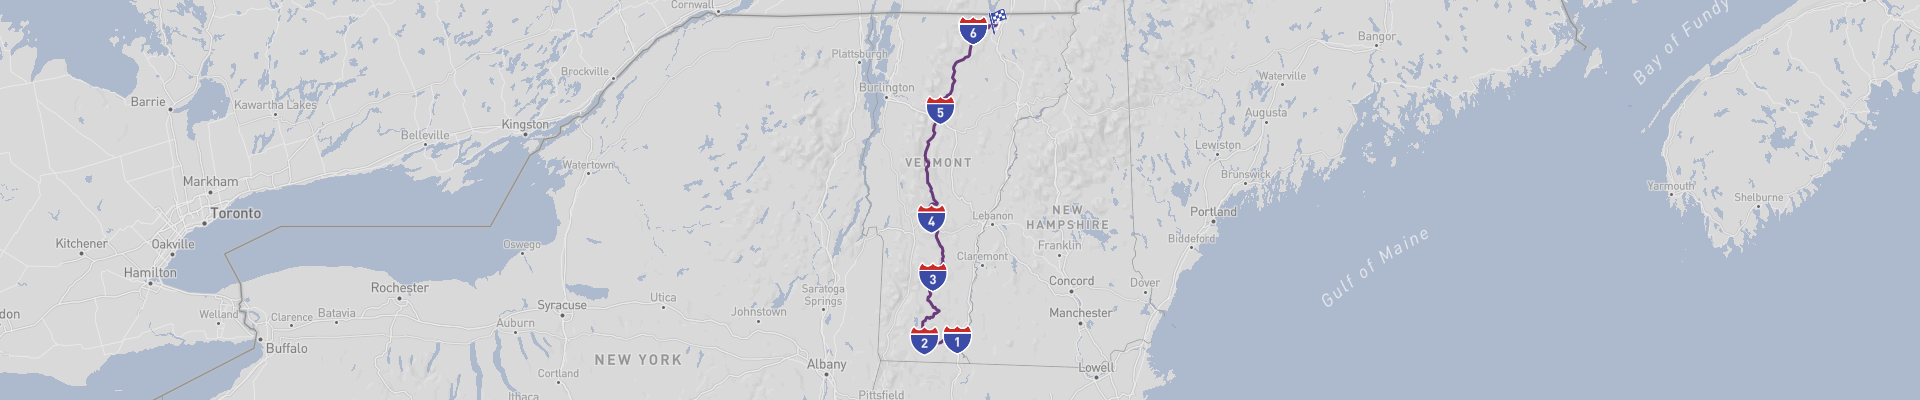 Itinéraire Vermont dans Vt100